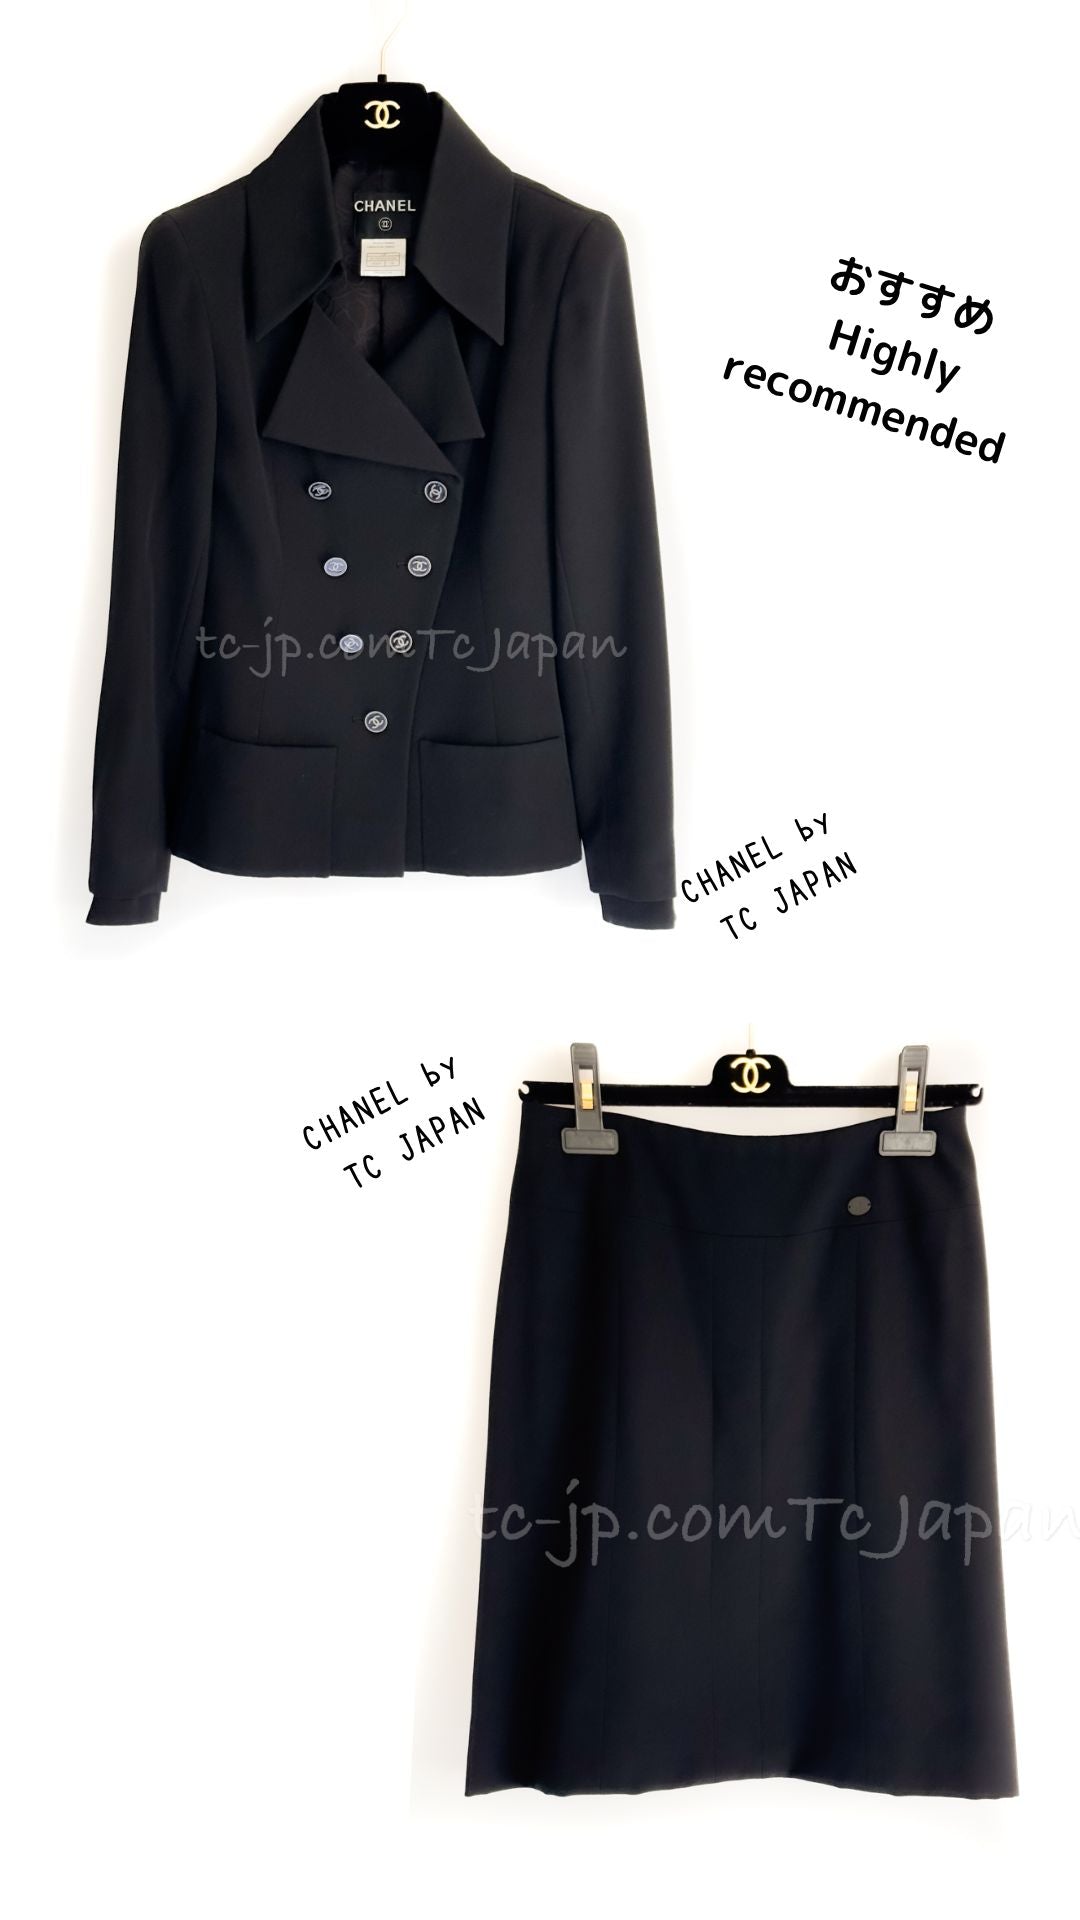 シャネル スーツ CHANEL Suit【正規品・専門店】シャネル 洋服の専門店